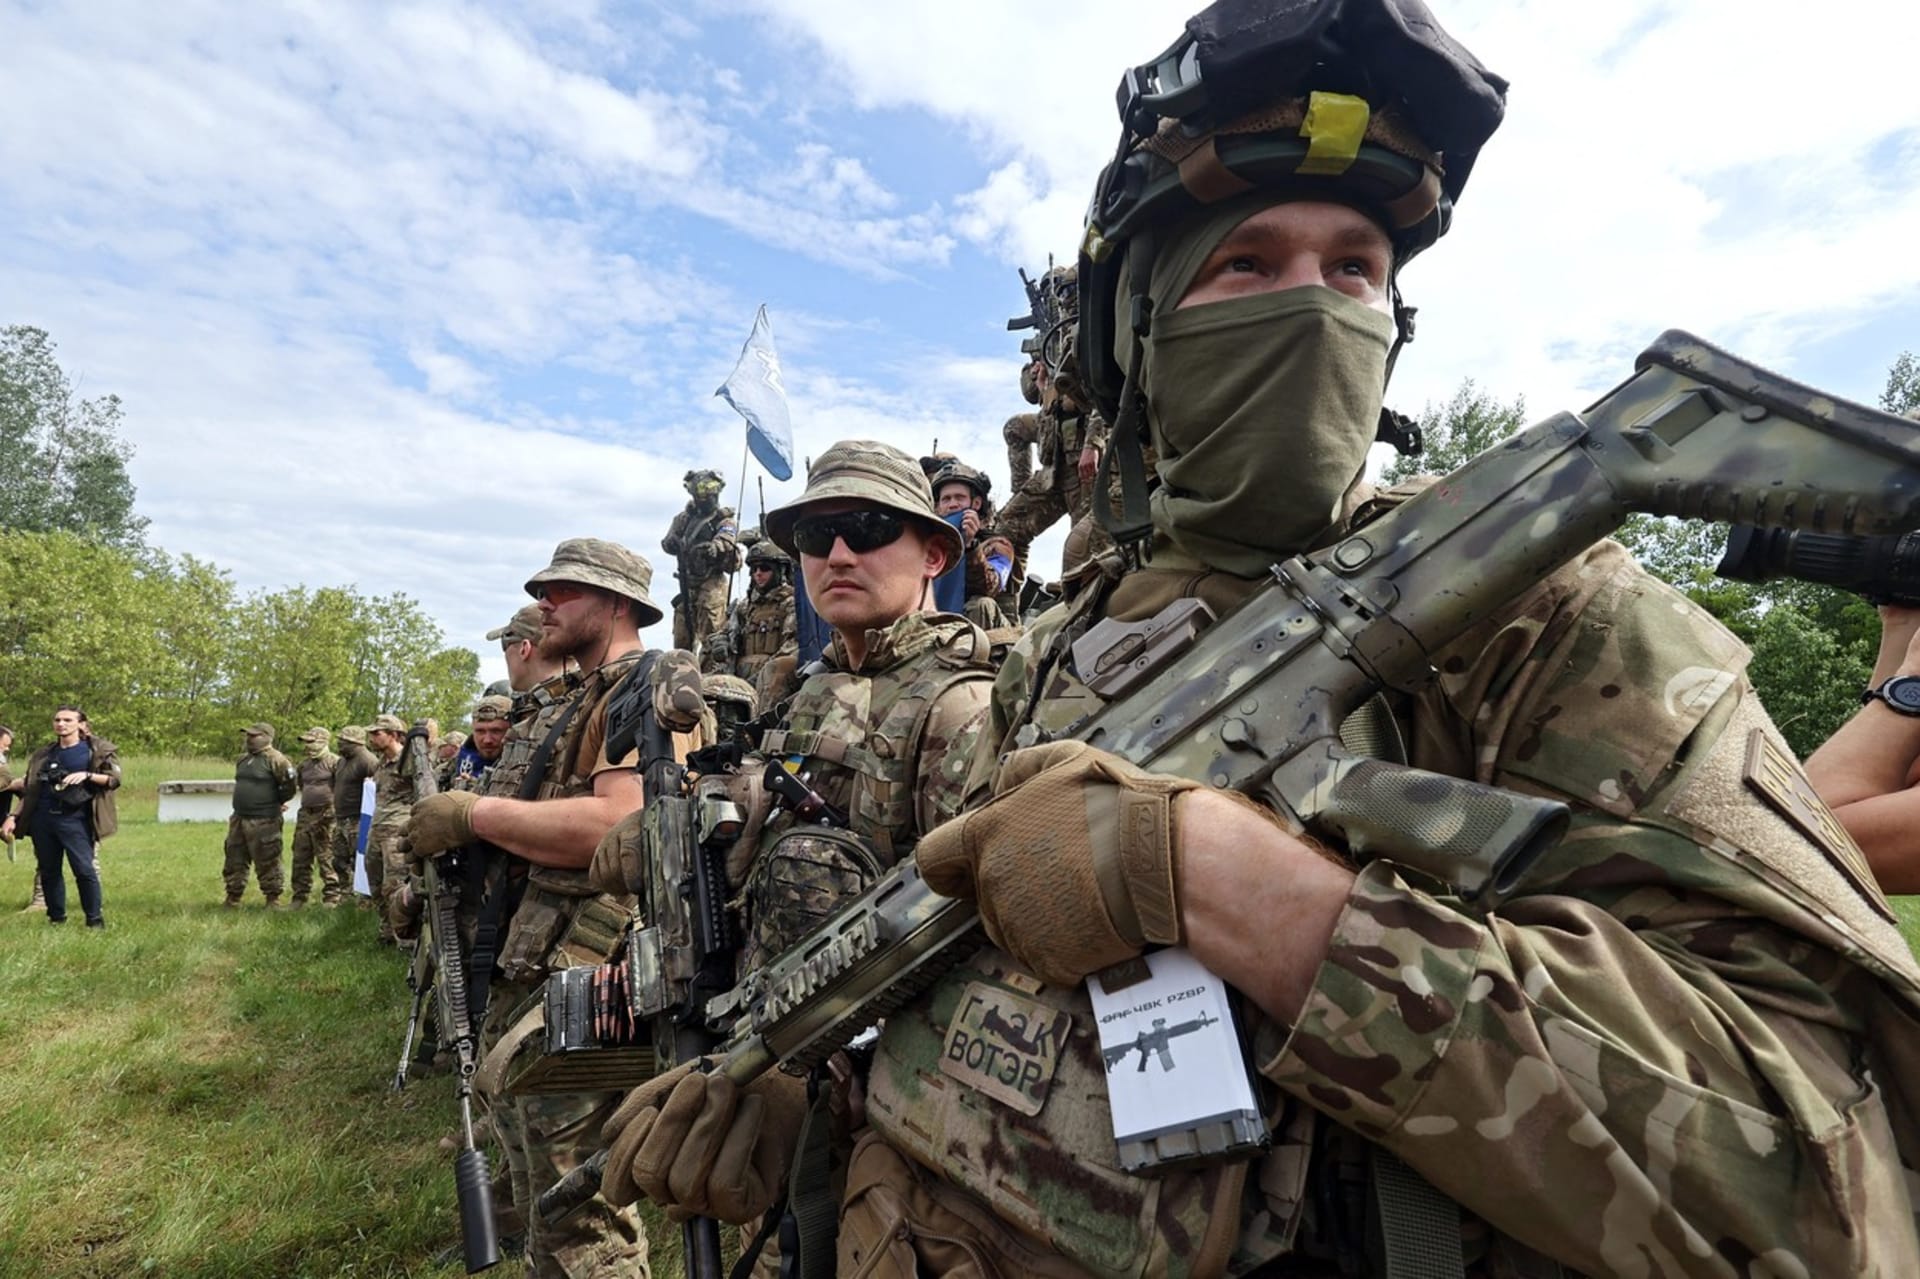 Ozbrojenci z Legie Svobodné Rusko se staví proti vládě prezidenta Vladimira Putina. Bojovali po boku Ukrajinců a nyní se pokouší o partyzánské akce přímo uvnitř Ruska.